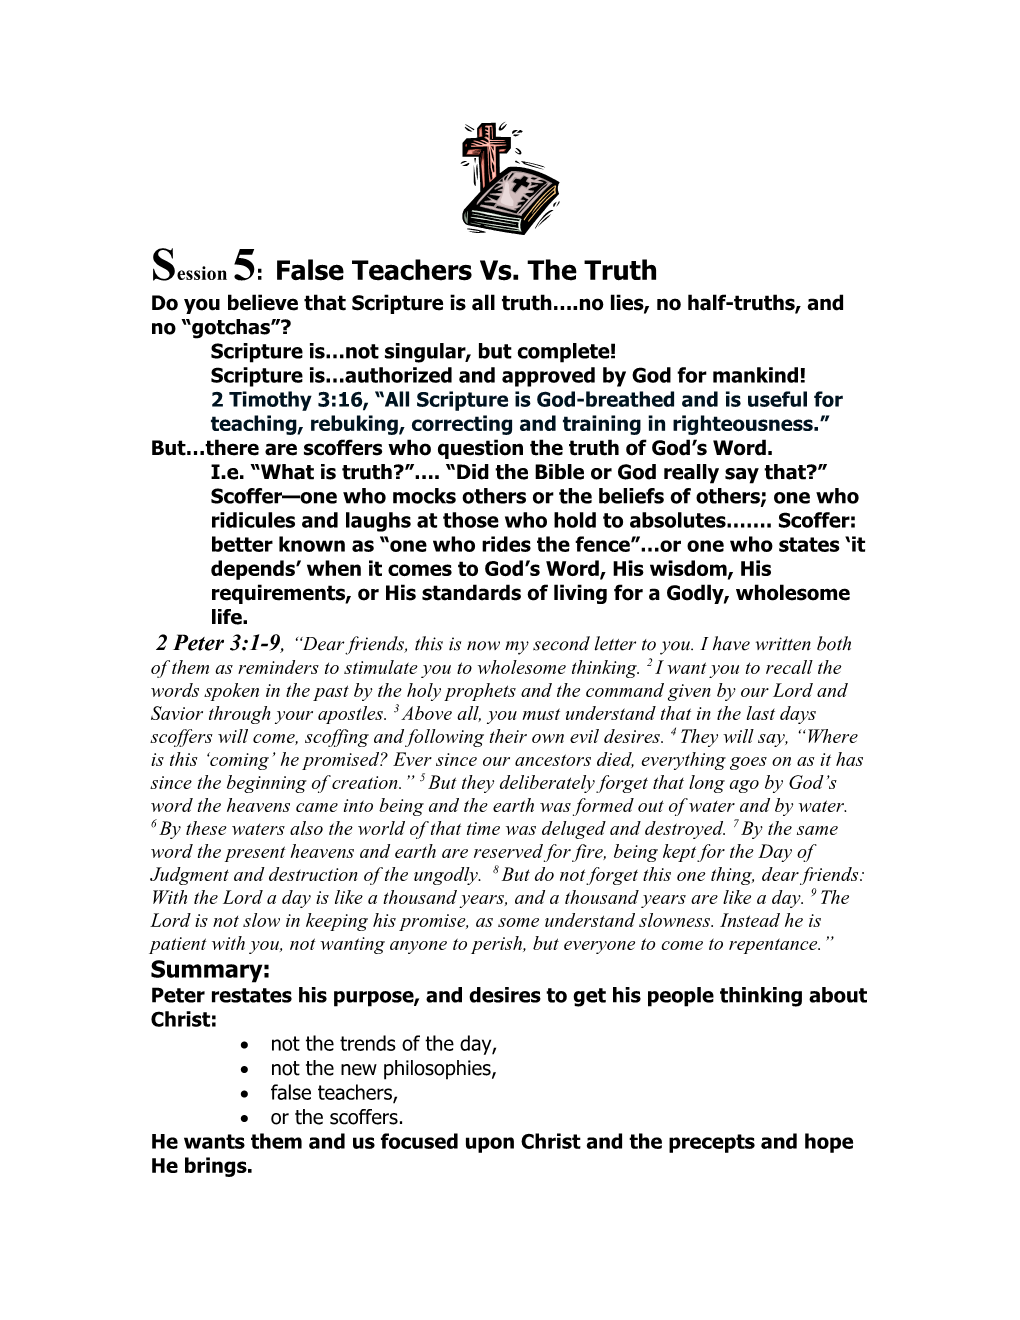 Session 5: False Teachers Vs. the Truth